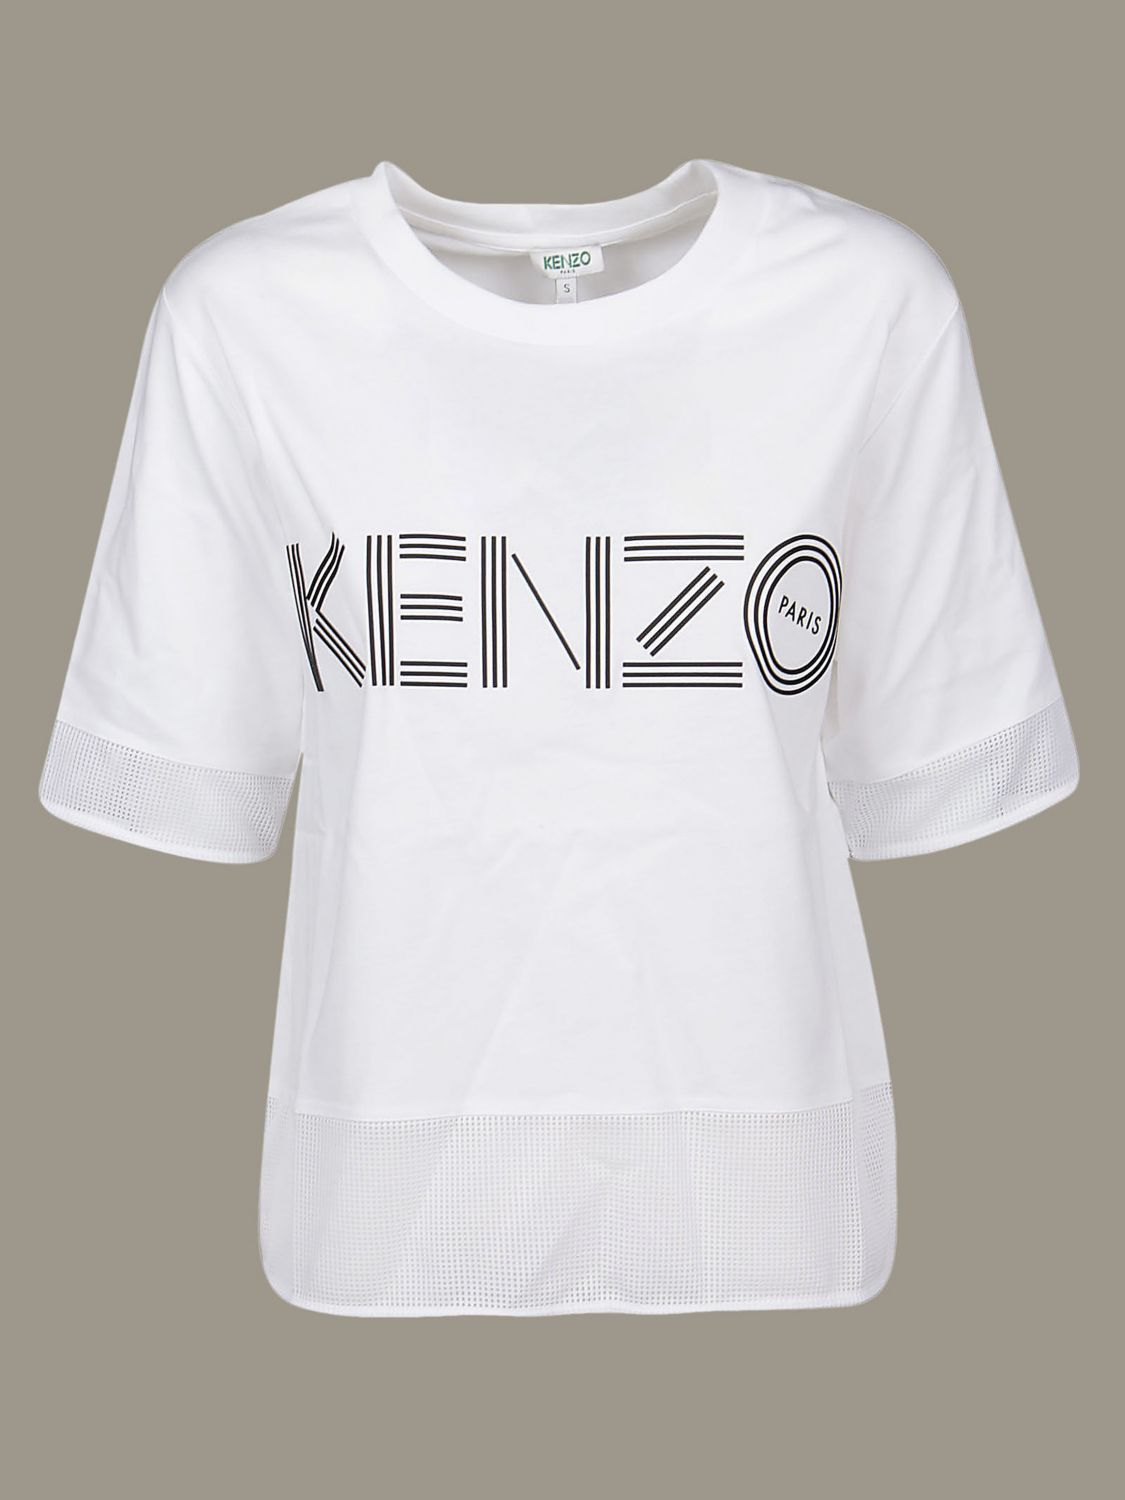 kenzo shirt womens